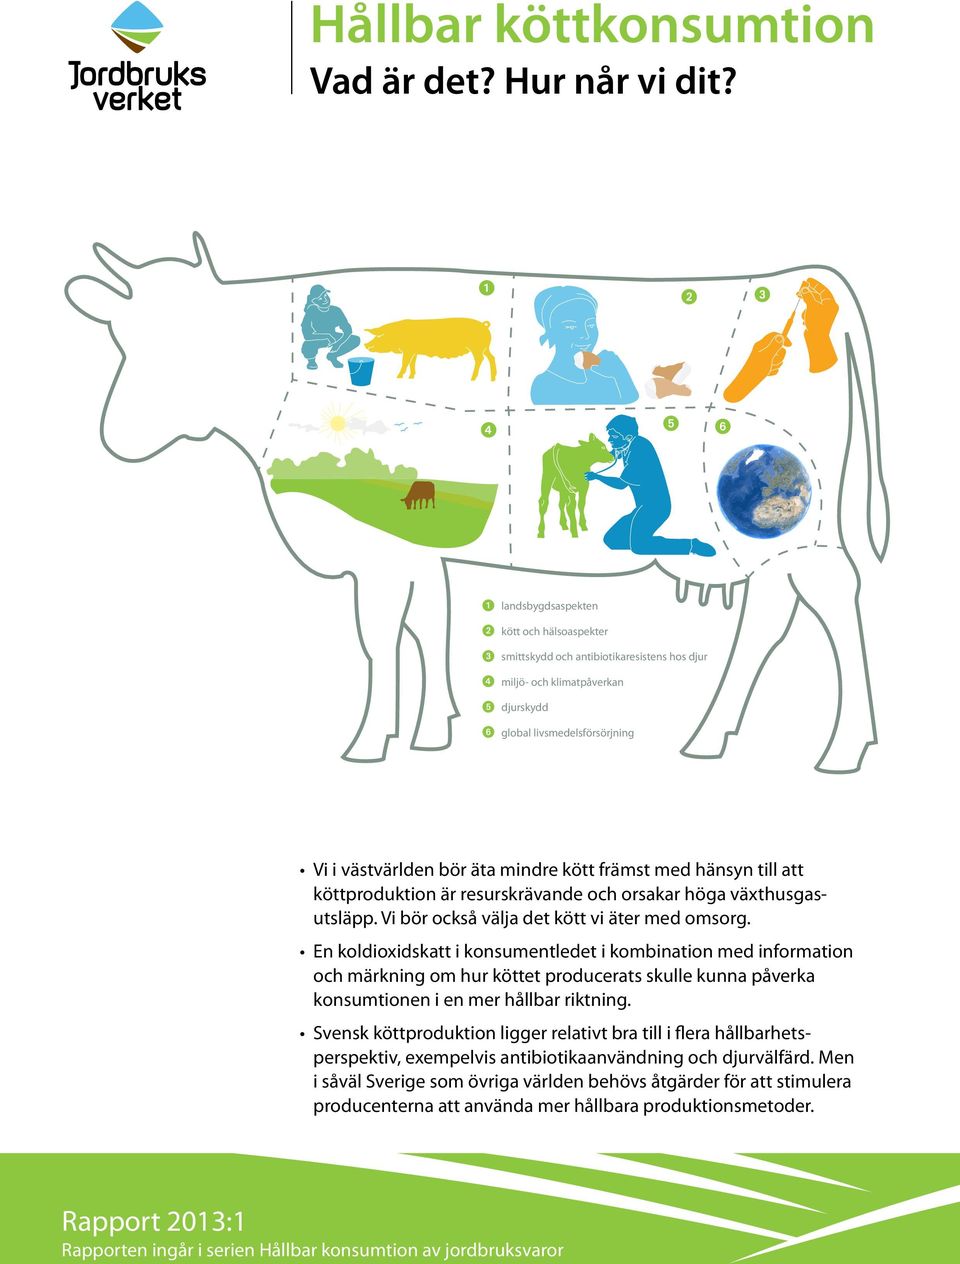 hänsyn till att köttproduktion är resurskrävande och orsakar höga växthusgasutsläpp. Vi bör också välja det kött vi äter med omsorg.